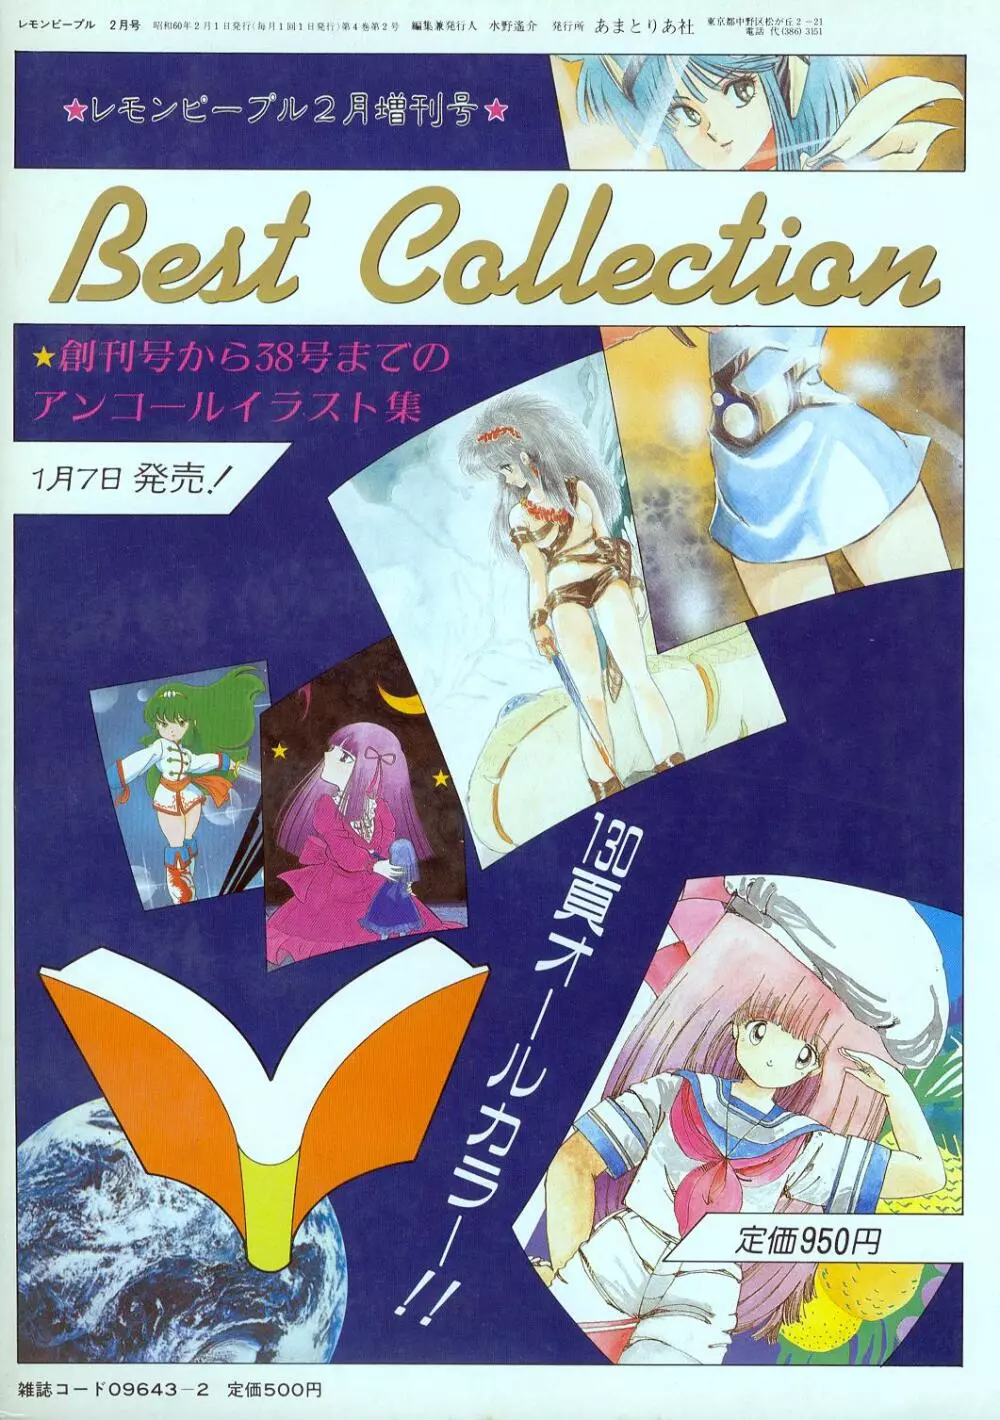 レモンピープル 1985年2月増刊号 Vol.38 Best Collection 1ページ